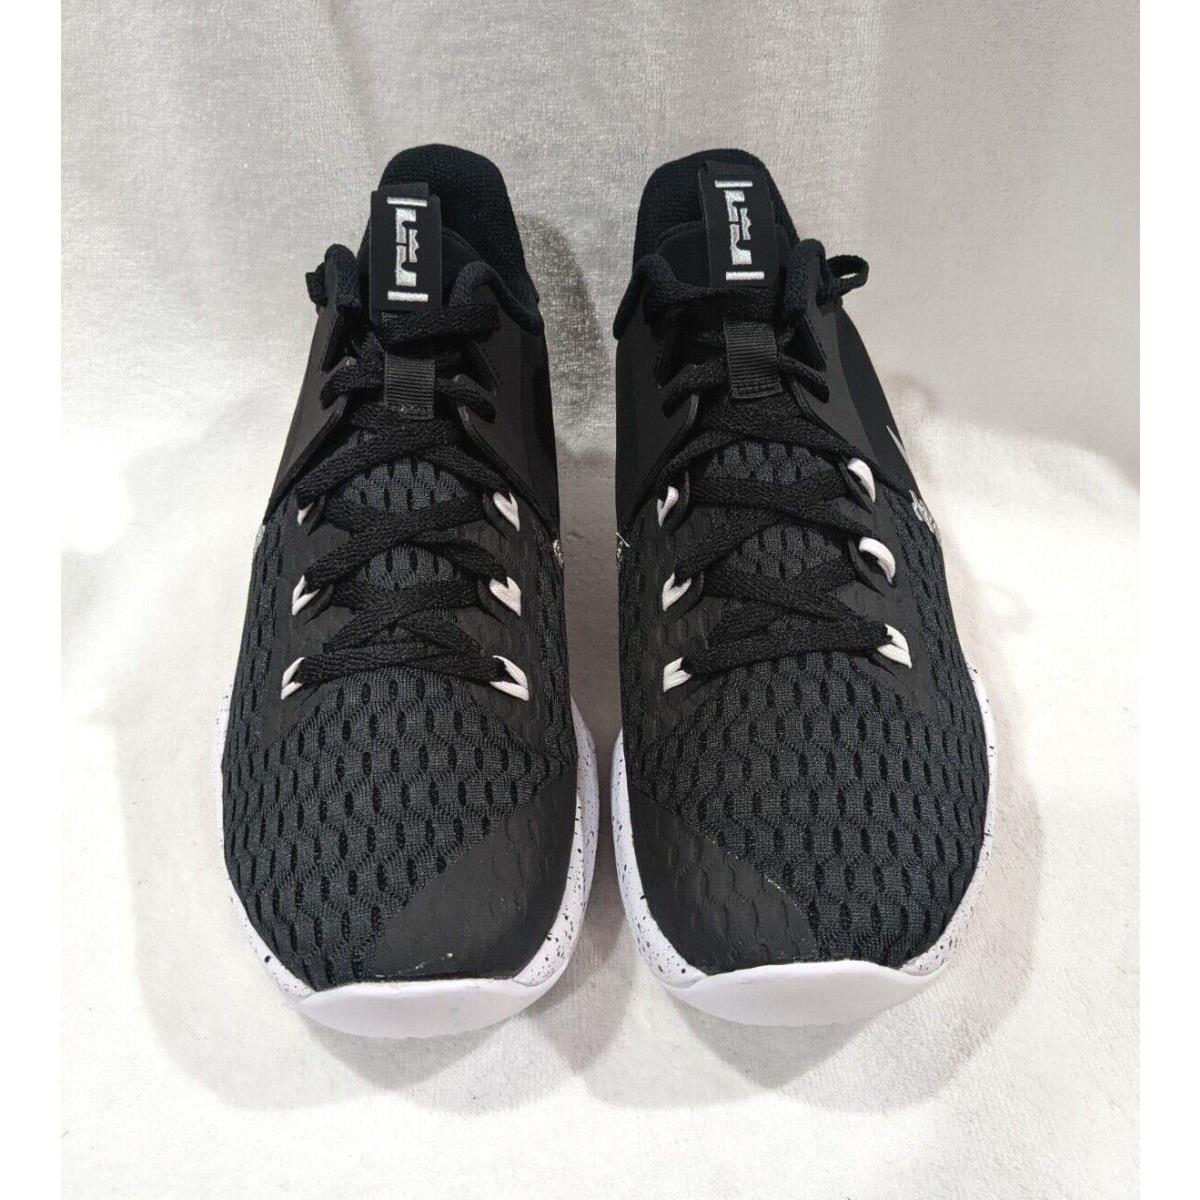 Nike shoes LeBron - Black , Silver , White 2